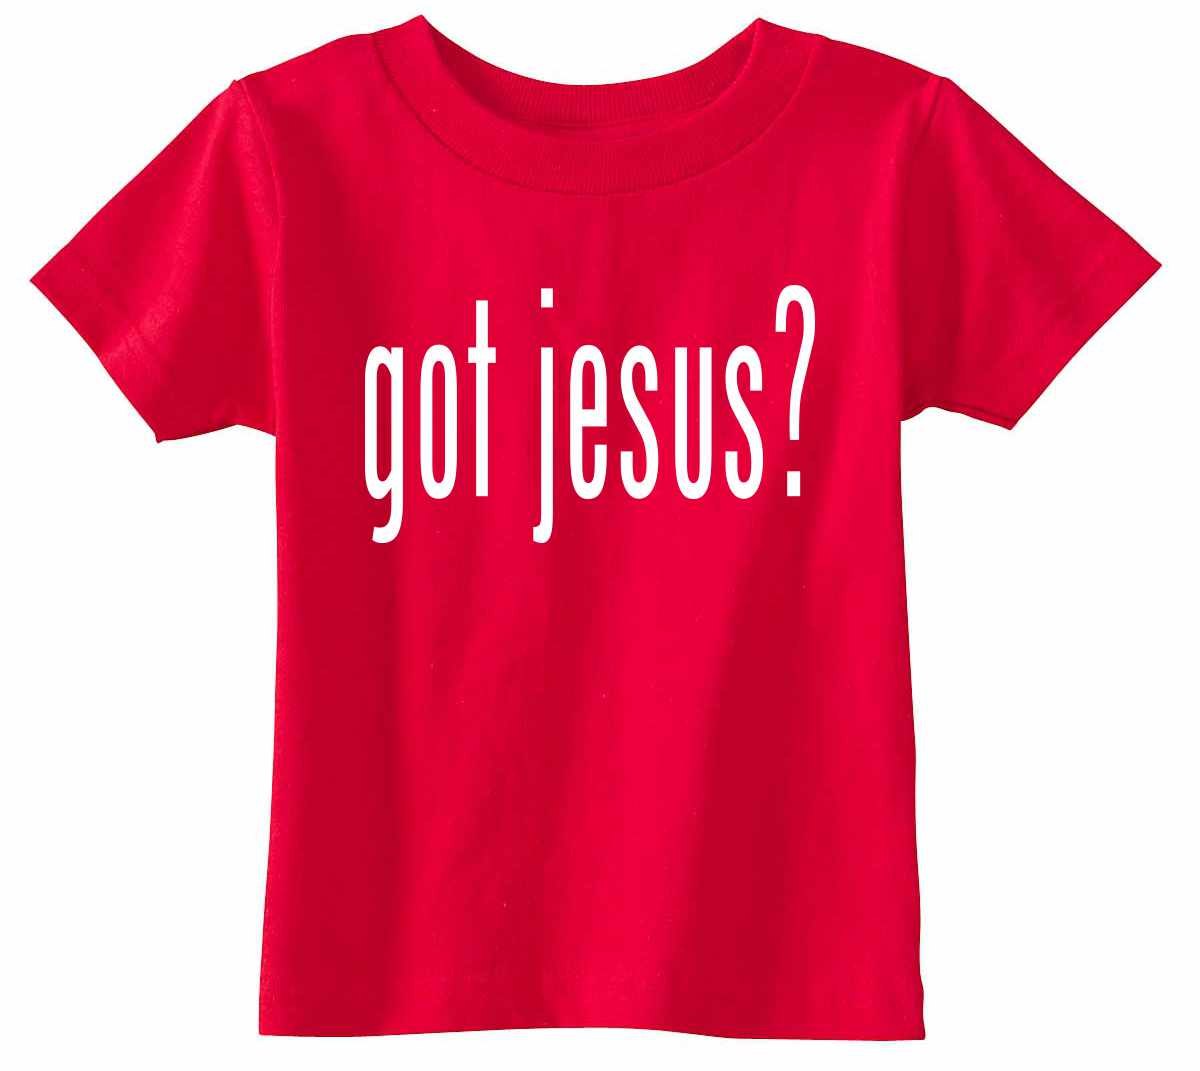 GOT JESUS? on Infant-Toddler T-Shirt (#366-7)